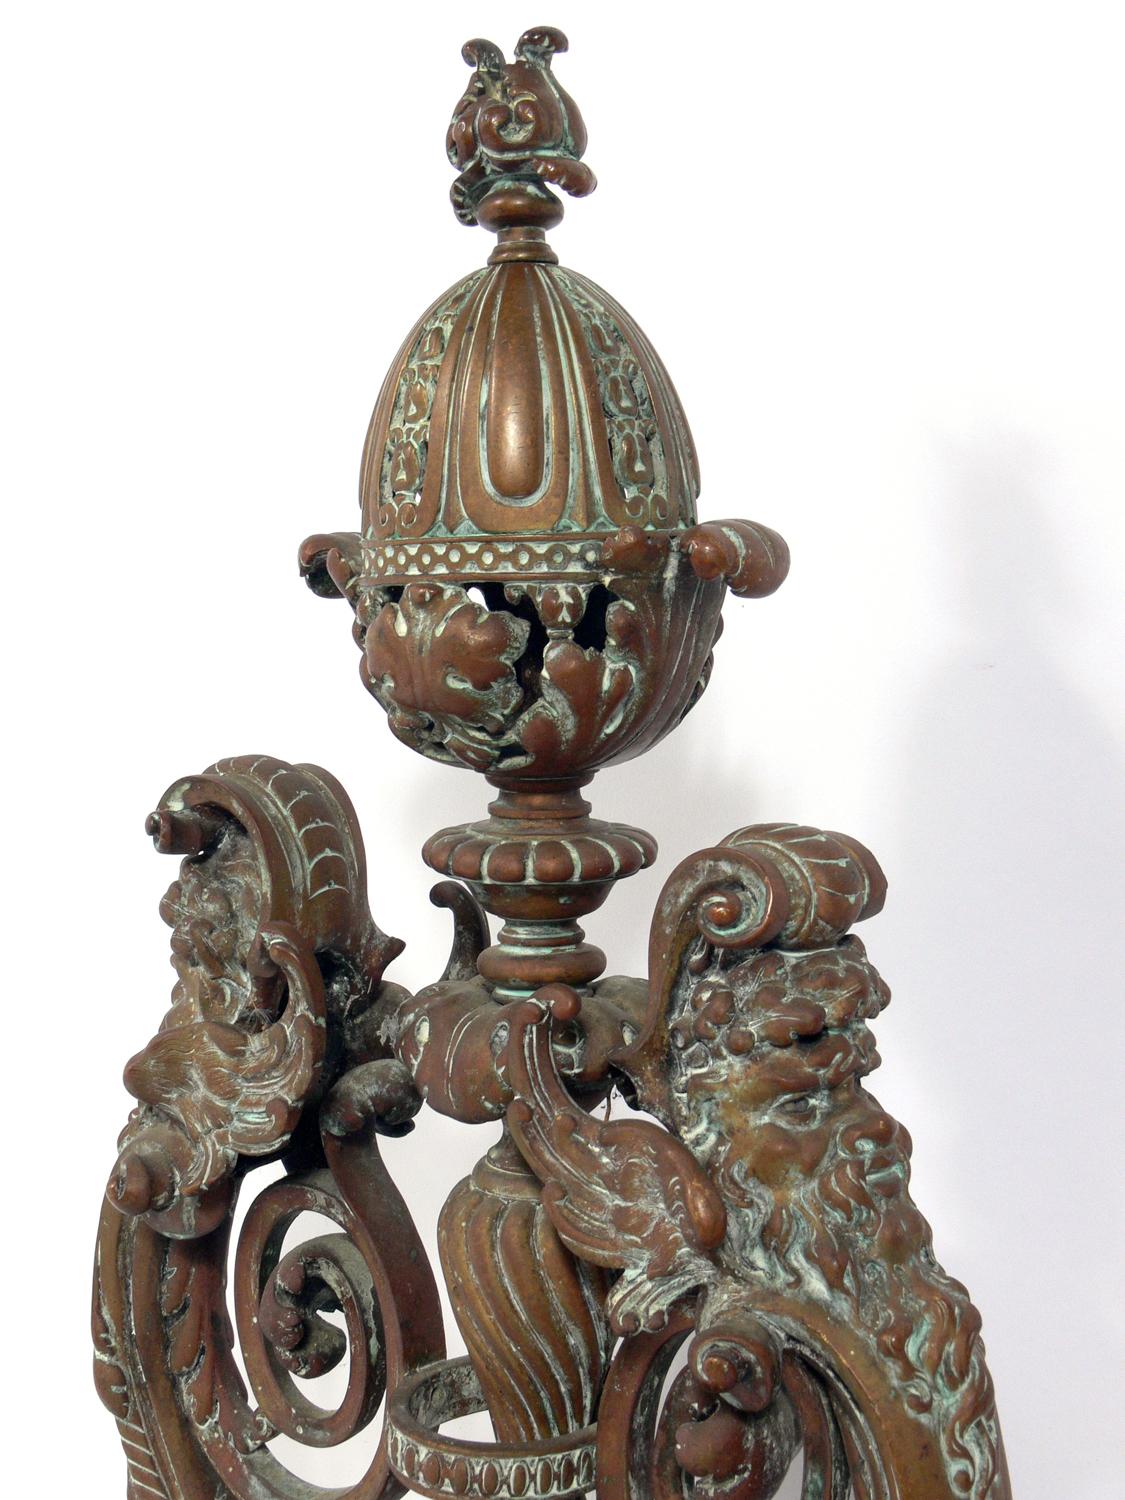 Verschnörkelte Bronze-Andirons aus dem 19. Jahrhundert, wahrscheinlich italienisch, um das Ende des 19. Jahrhunderts. Sie haben ihre wunderbare ursprüngliche Grünspan-Patina behalten. Sie wurden ohne rückseitig angebrachte Holzhalterungen geliefert,